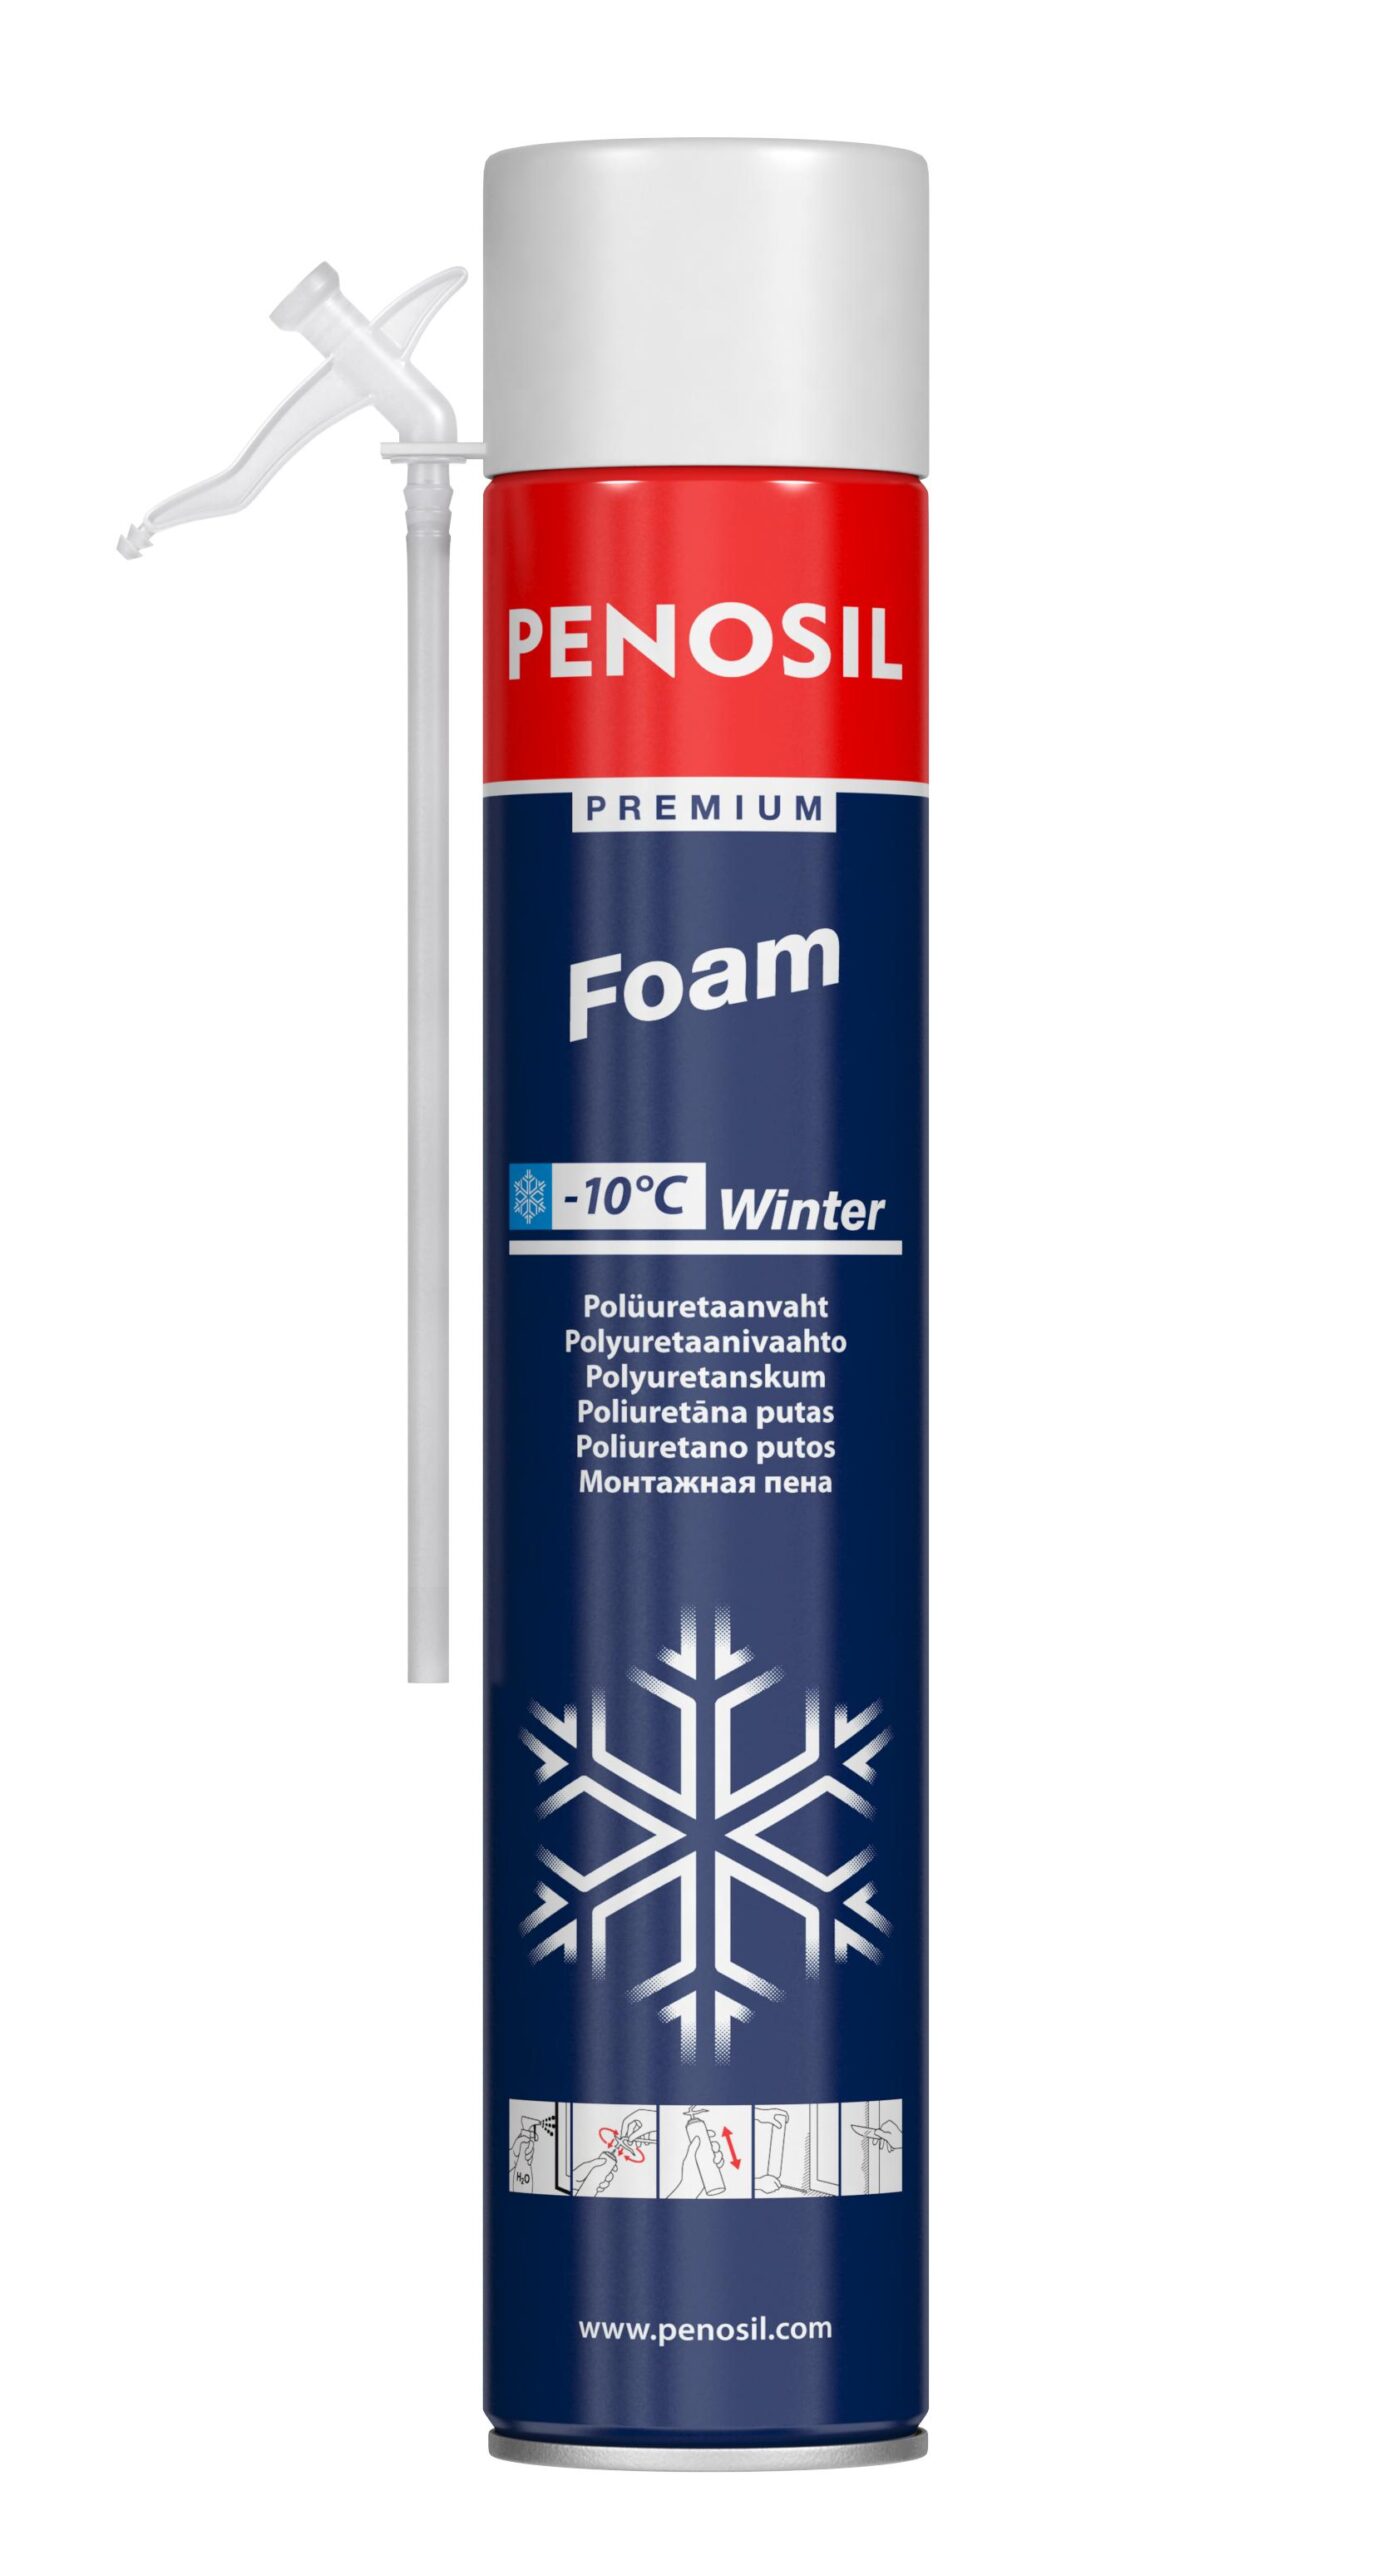 Изоляционная пена PENOSIL Premium Foam Winter с трубочкой-аппликатором для работ в зимнее время.